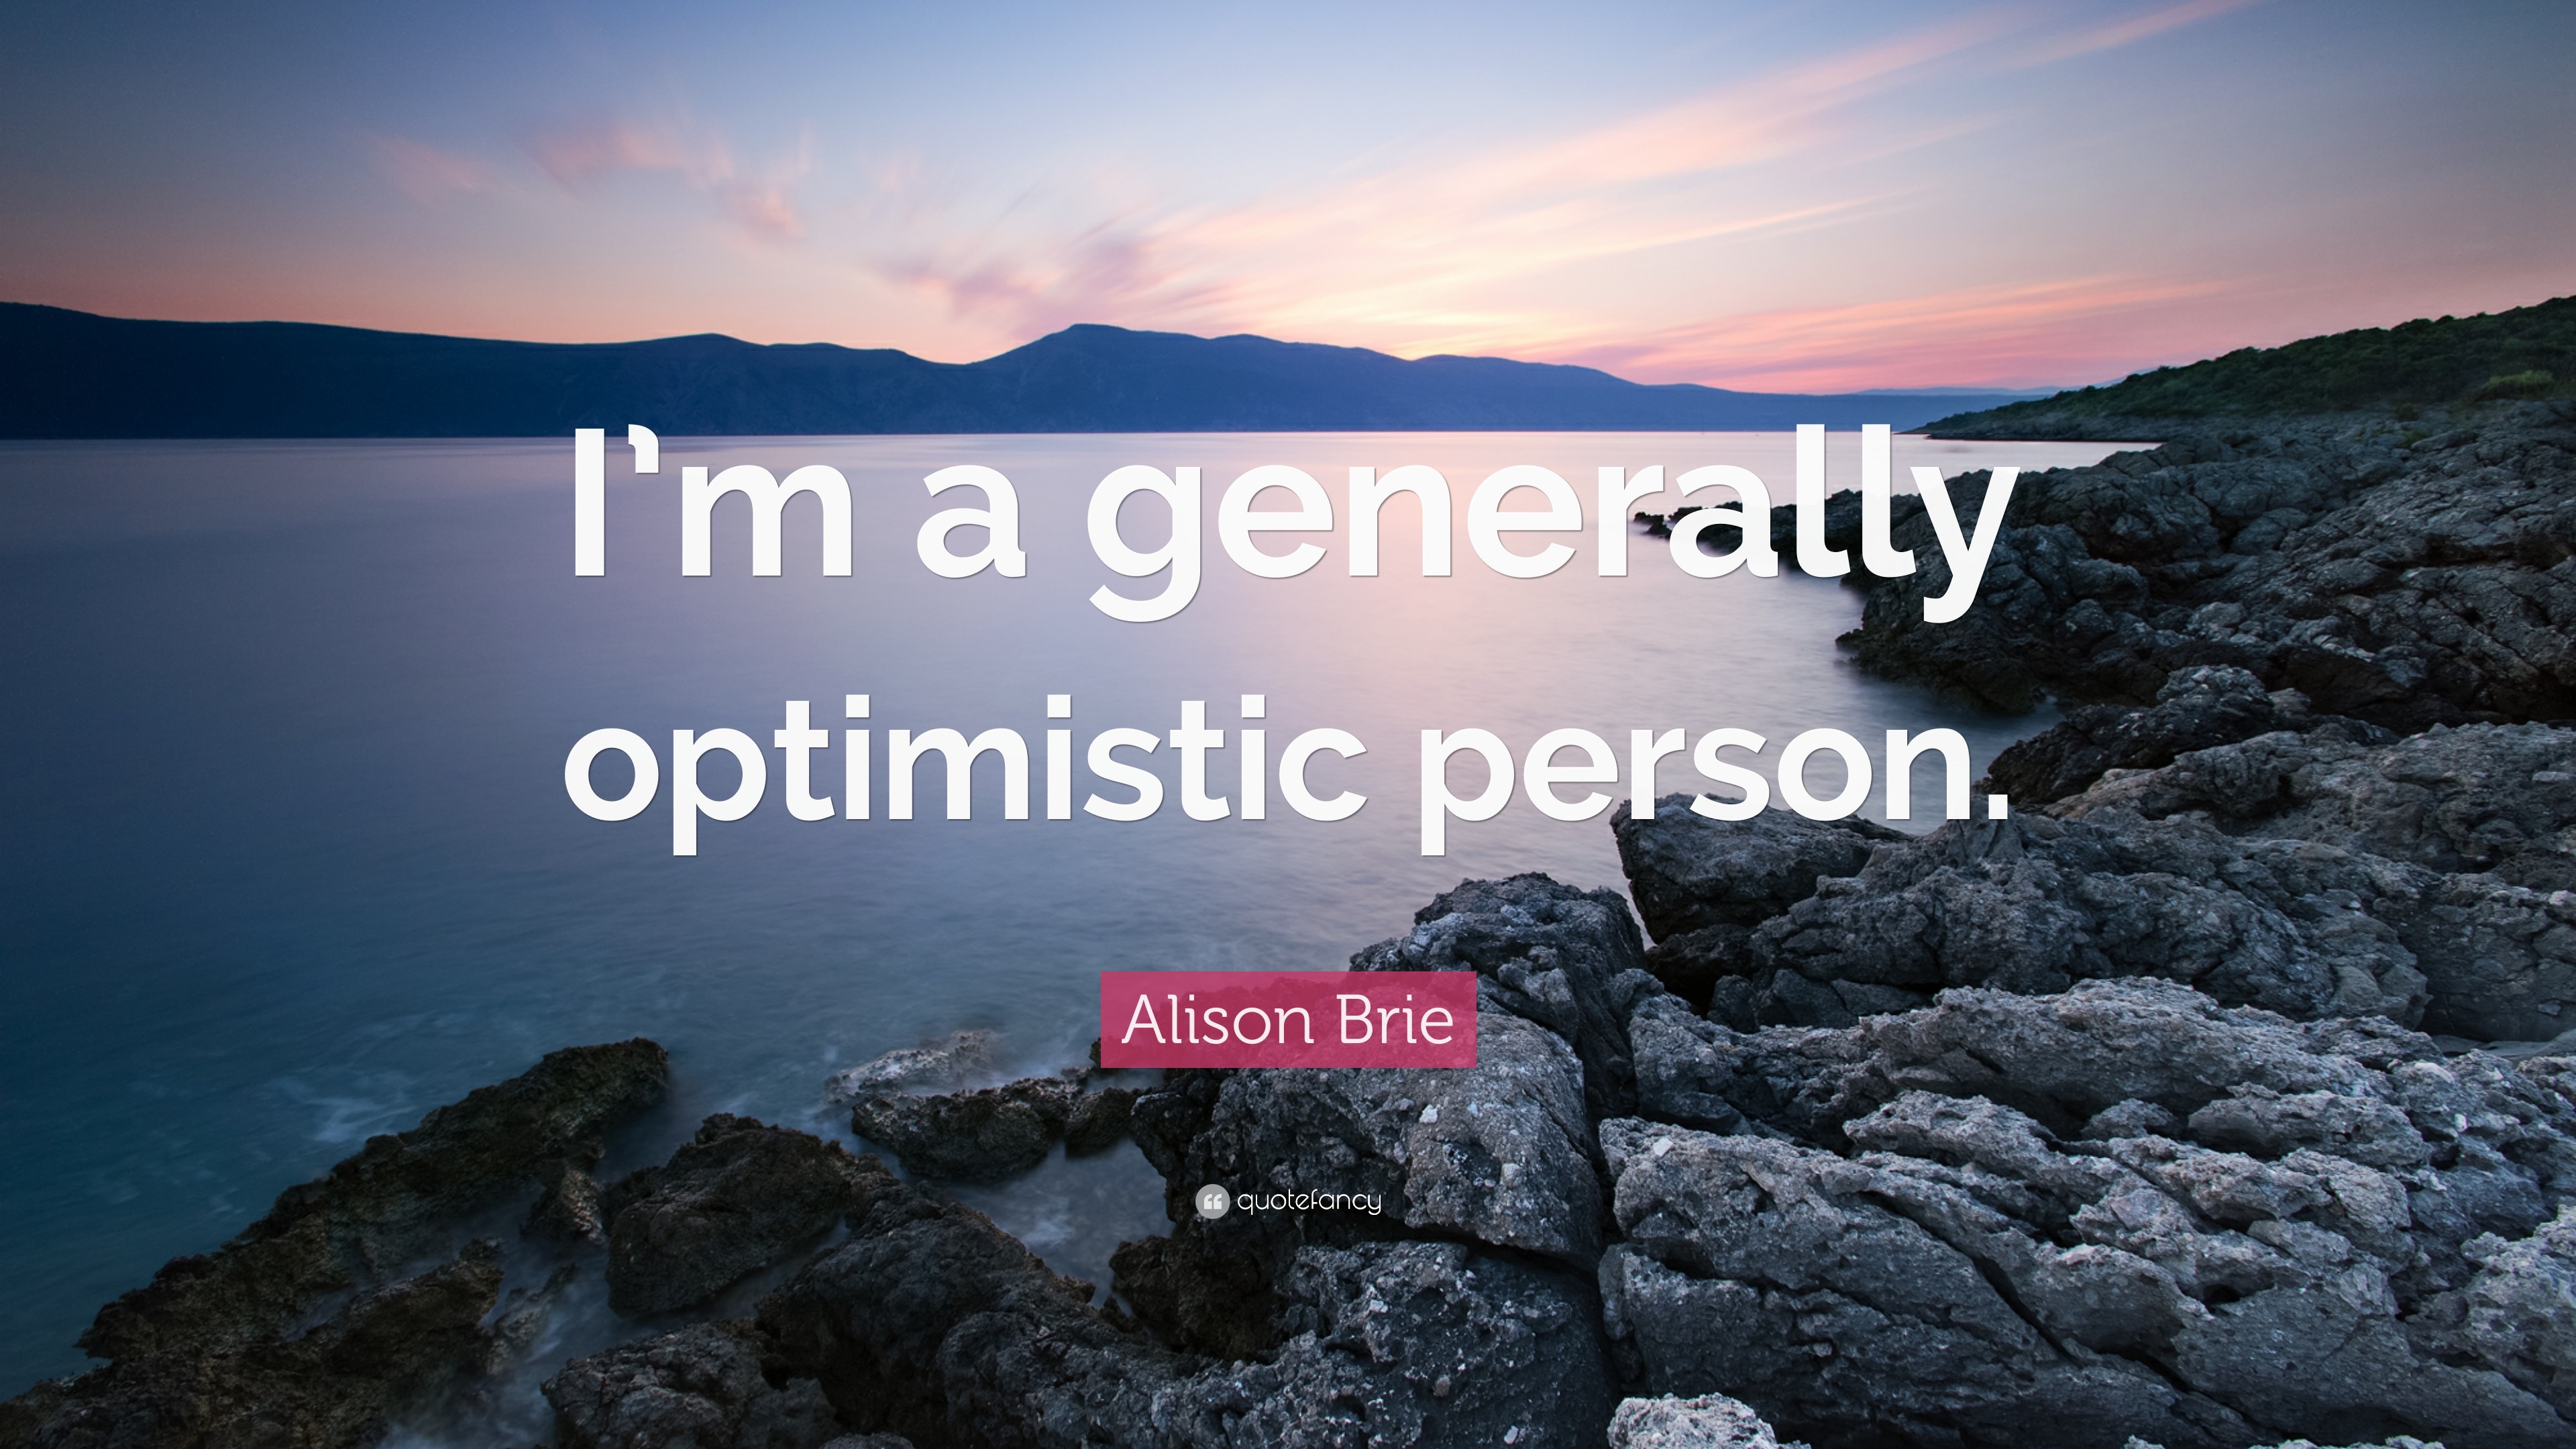 3840x2160 Alison Brie Quote: “I'm a generally optimistic person.”